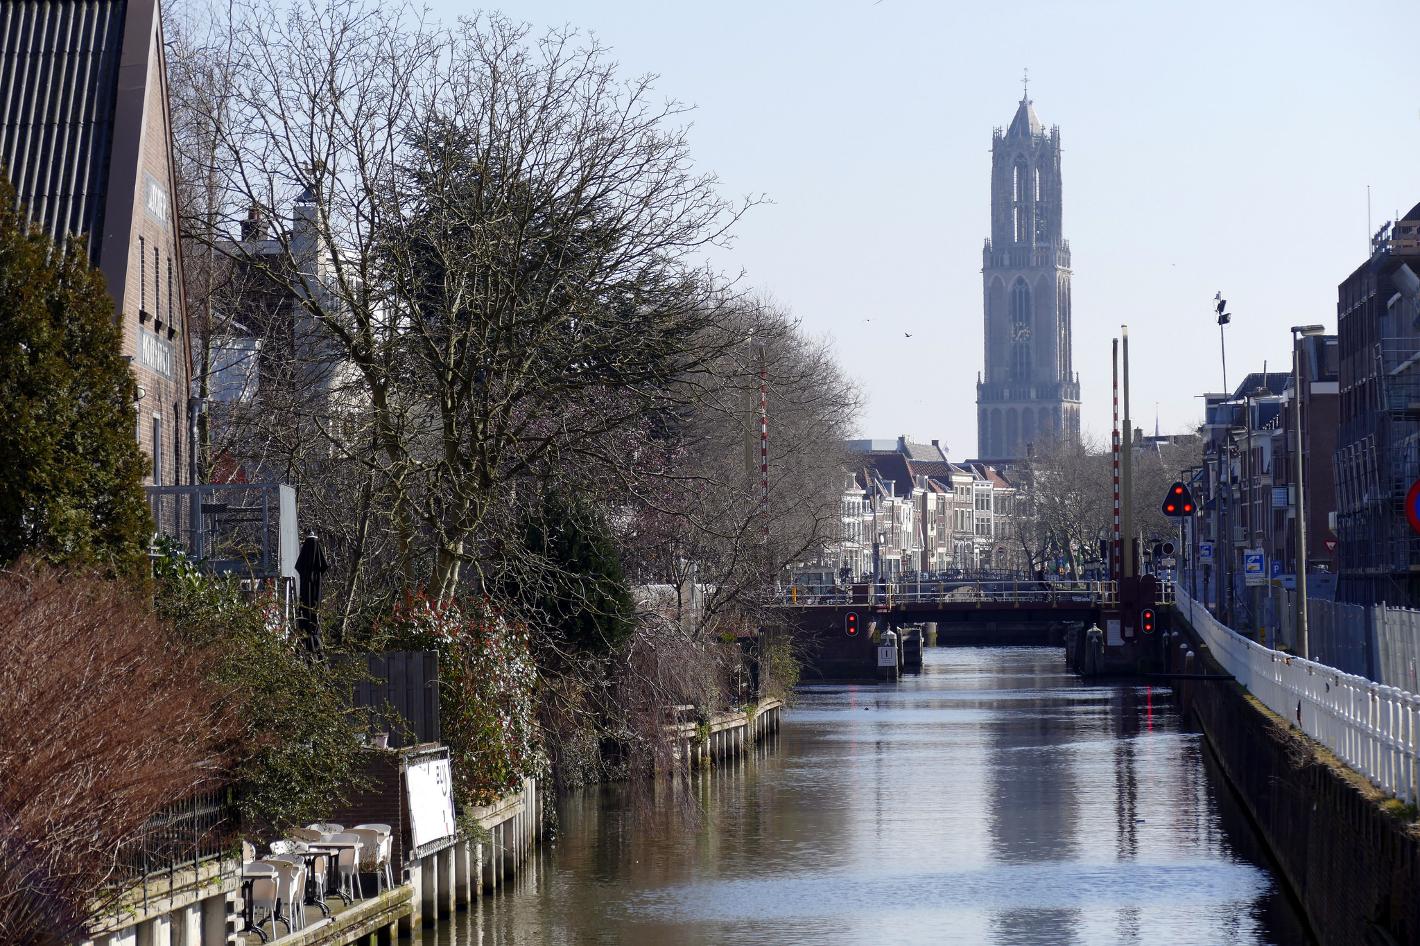 Foto Domtoren in Utrecht, Aussicht, Besichtigung, Erfahrung - #4